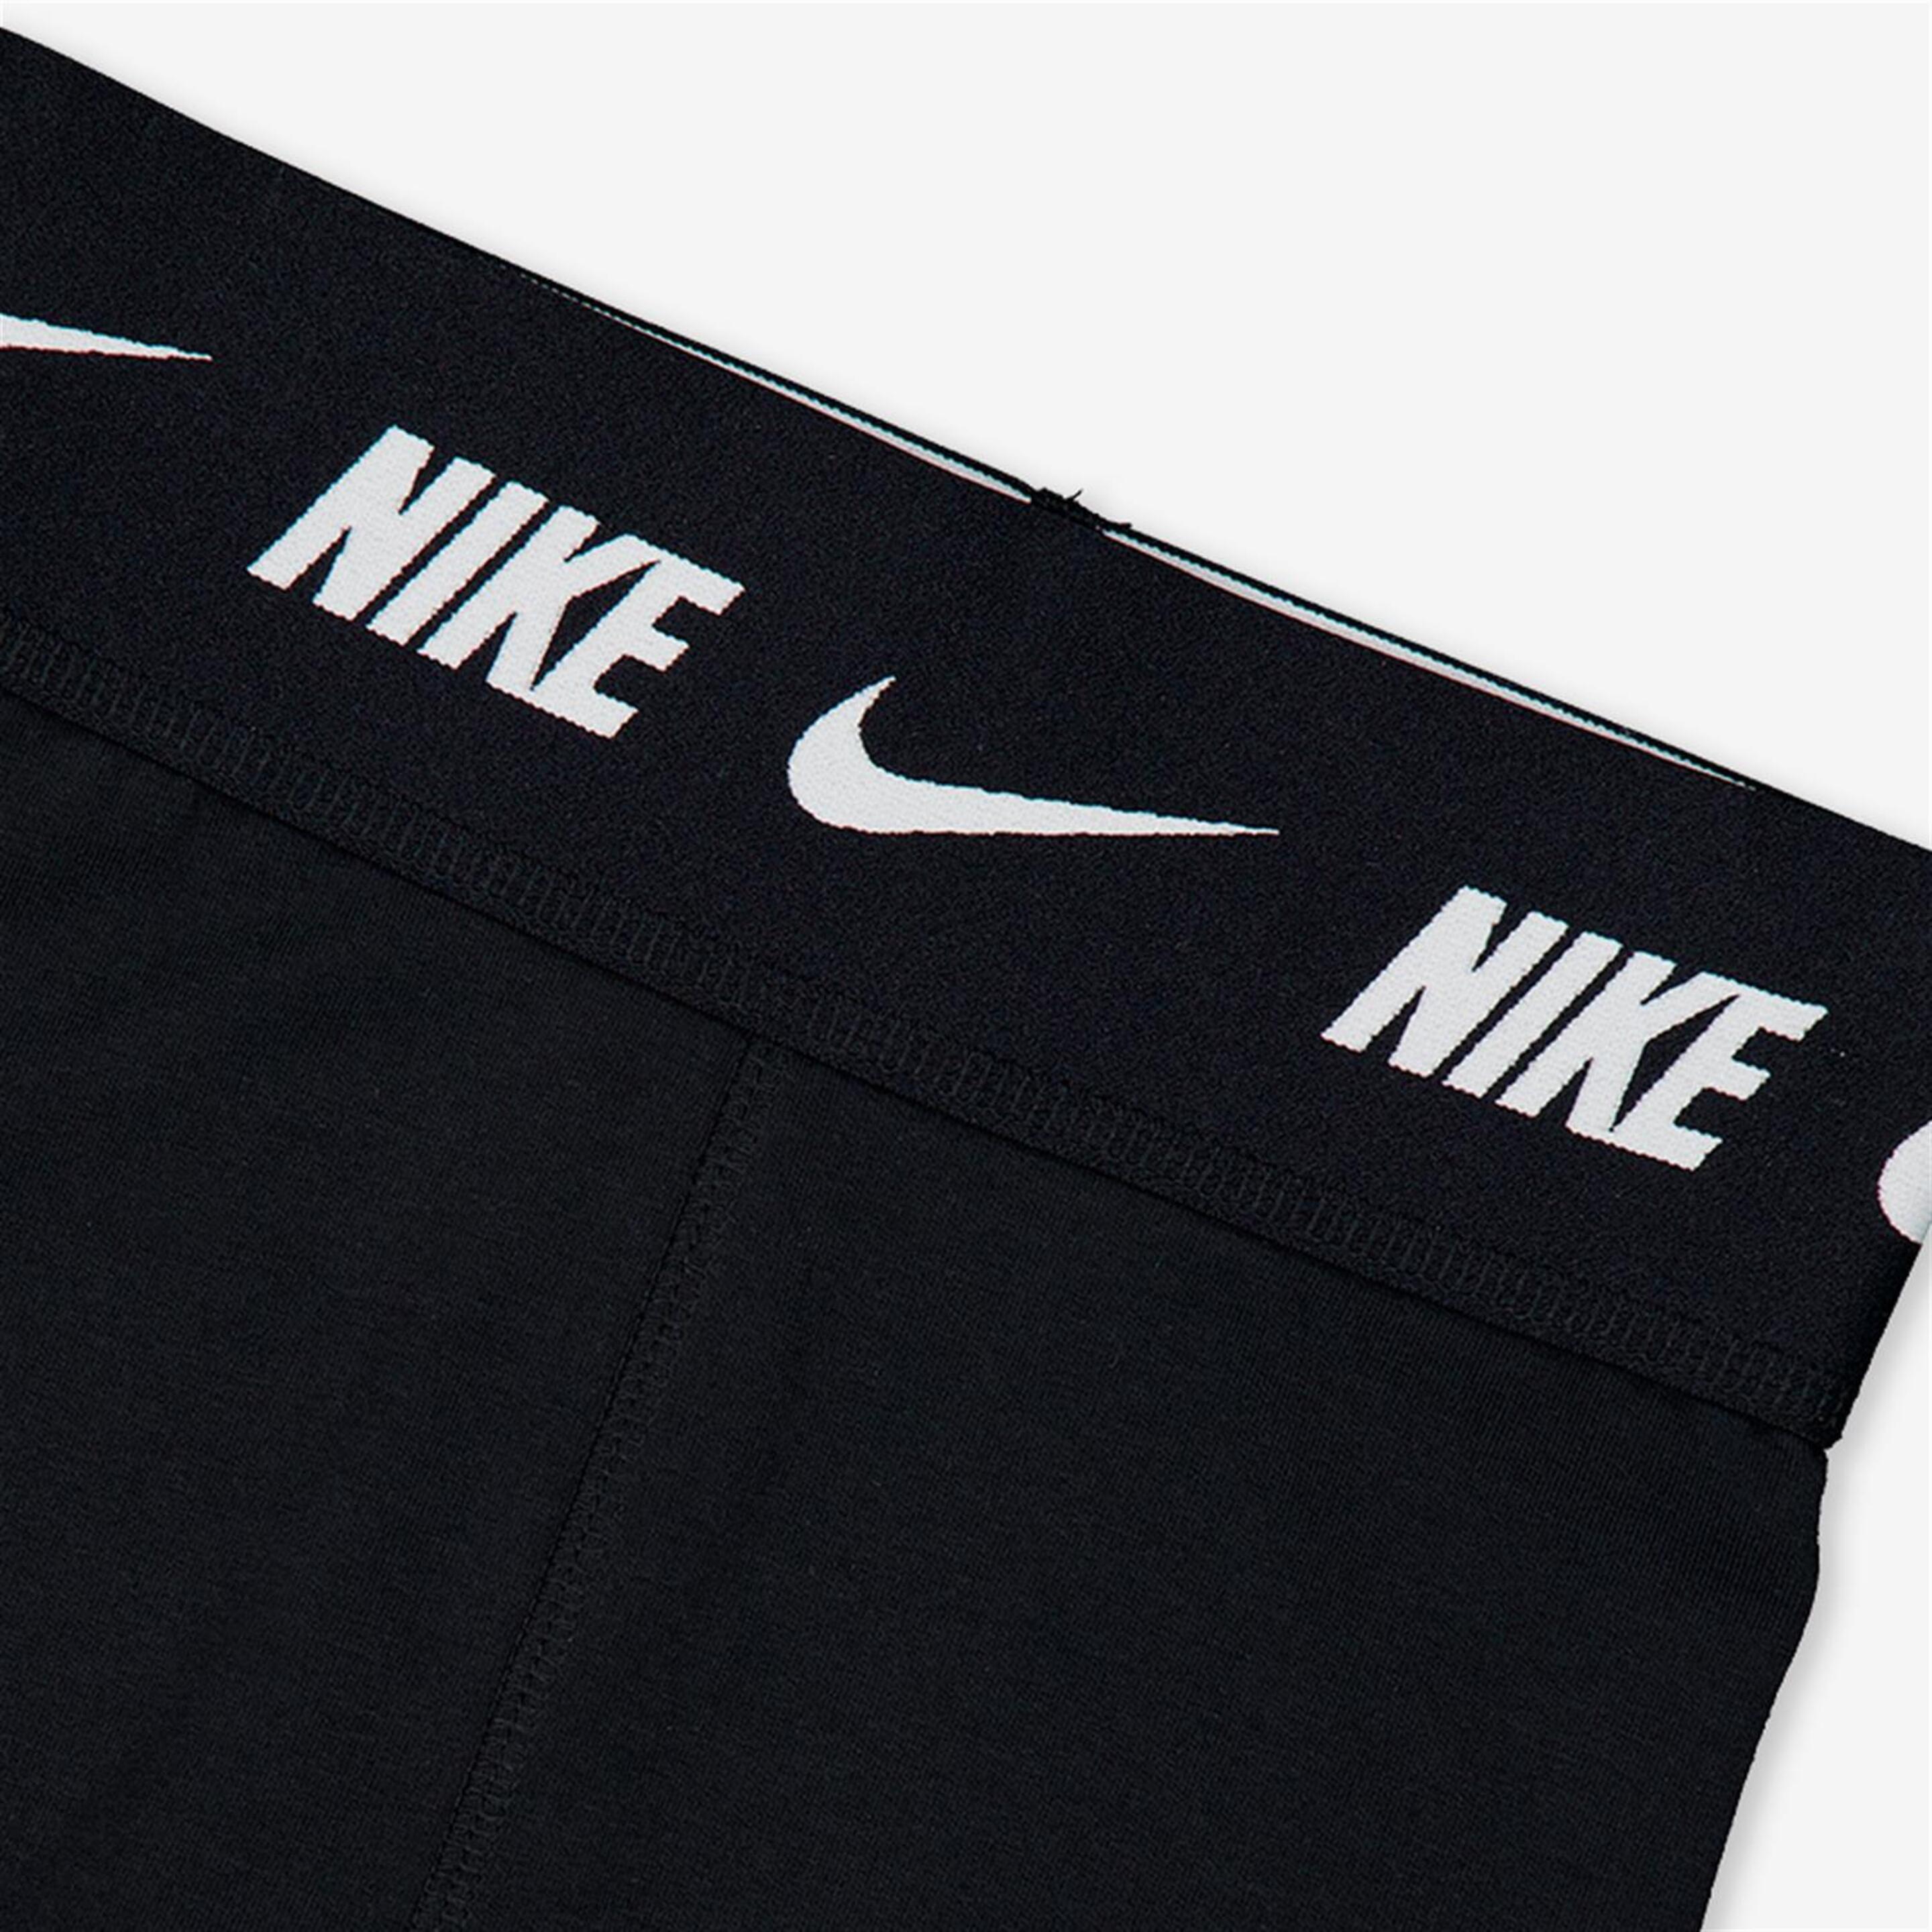 Pantalón Nike - Negro - Pantalón Largo Niña